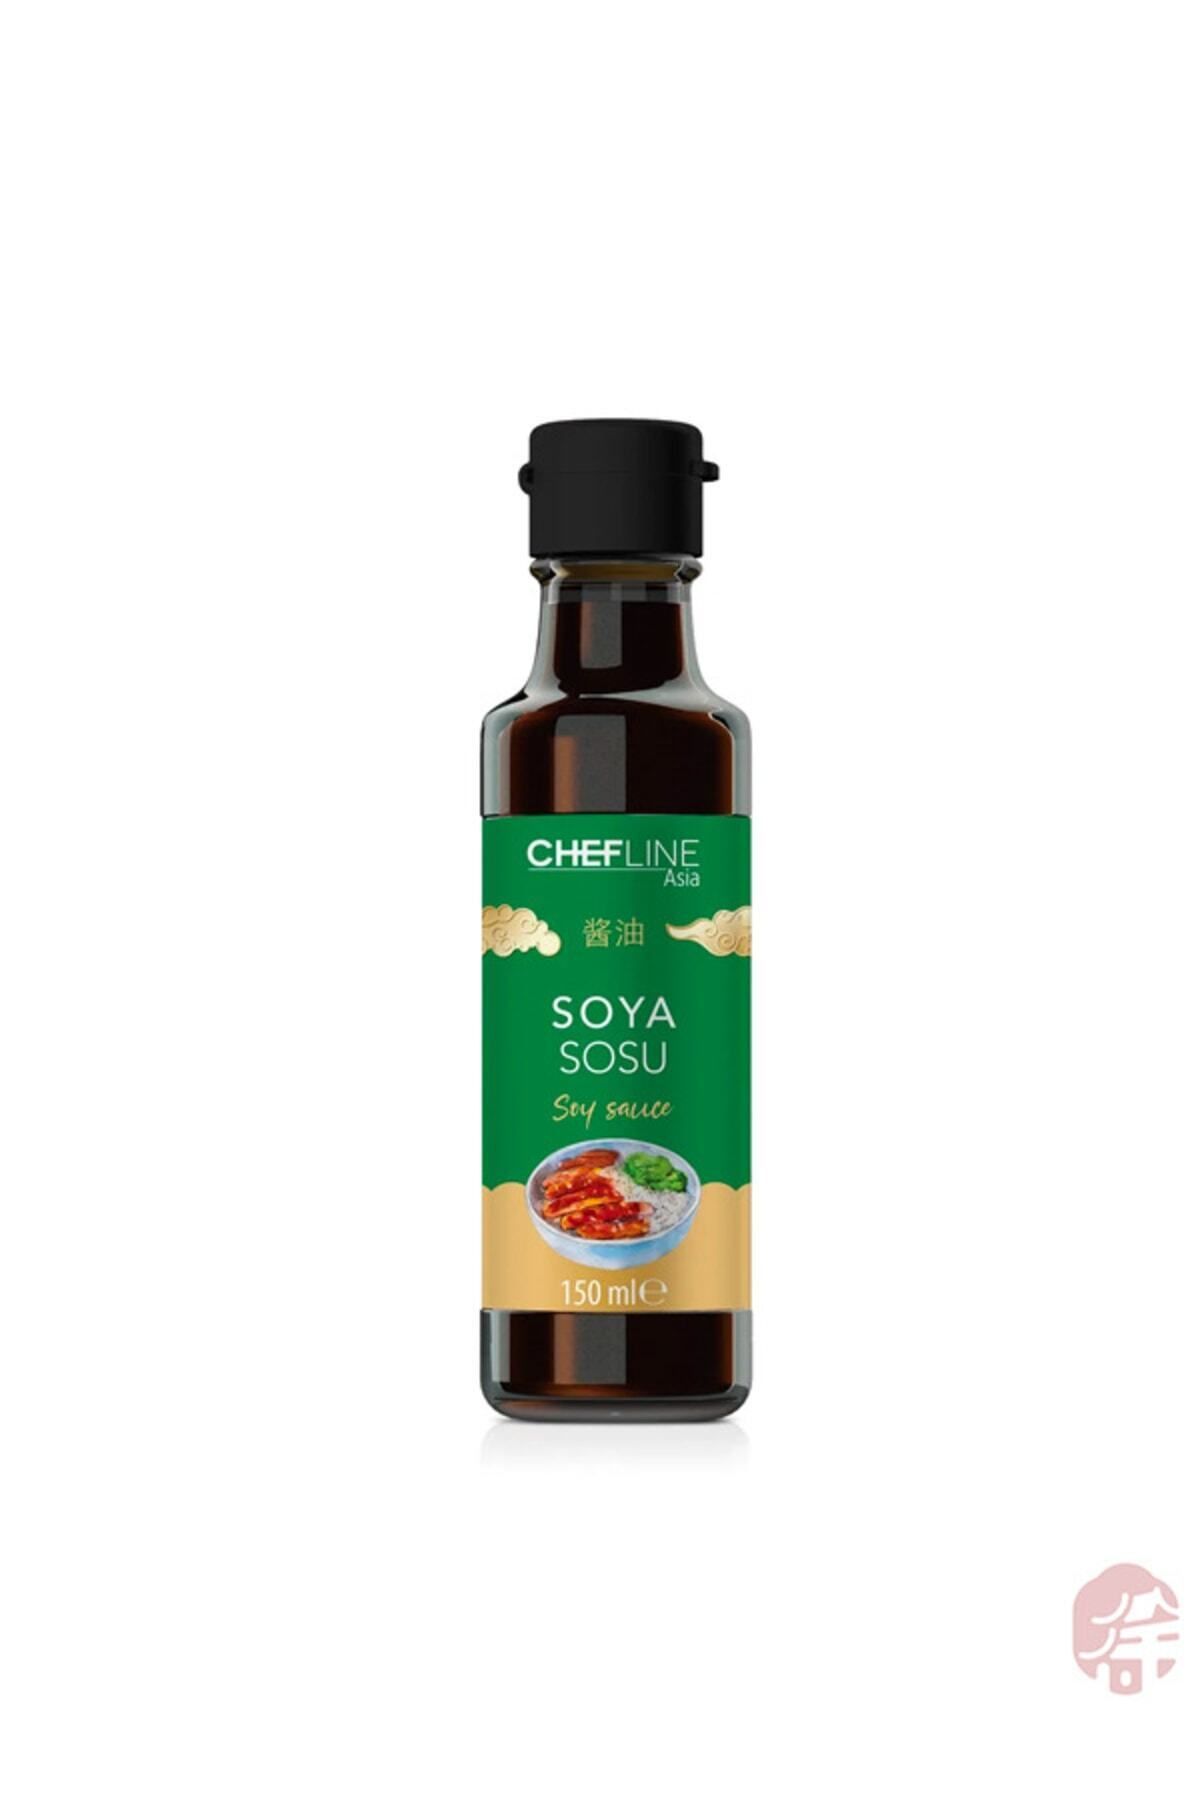 Chefline Asia Soya Sosu ( Chef Line Soya Sauce) - 150ml.